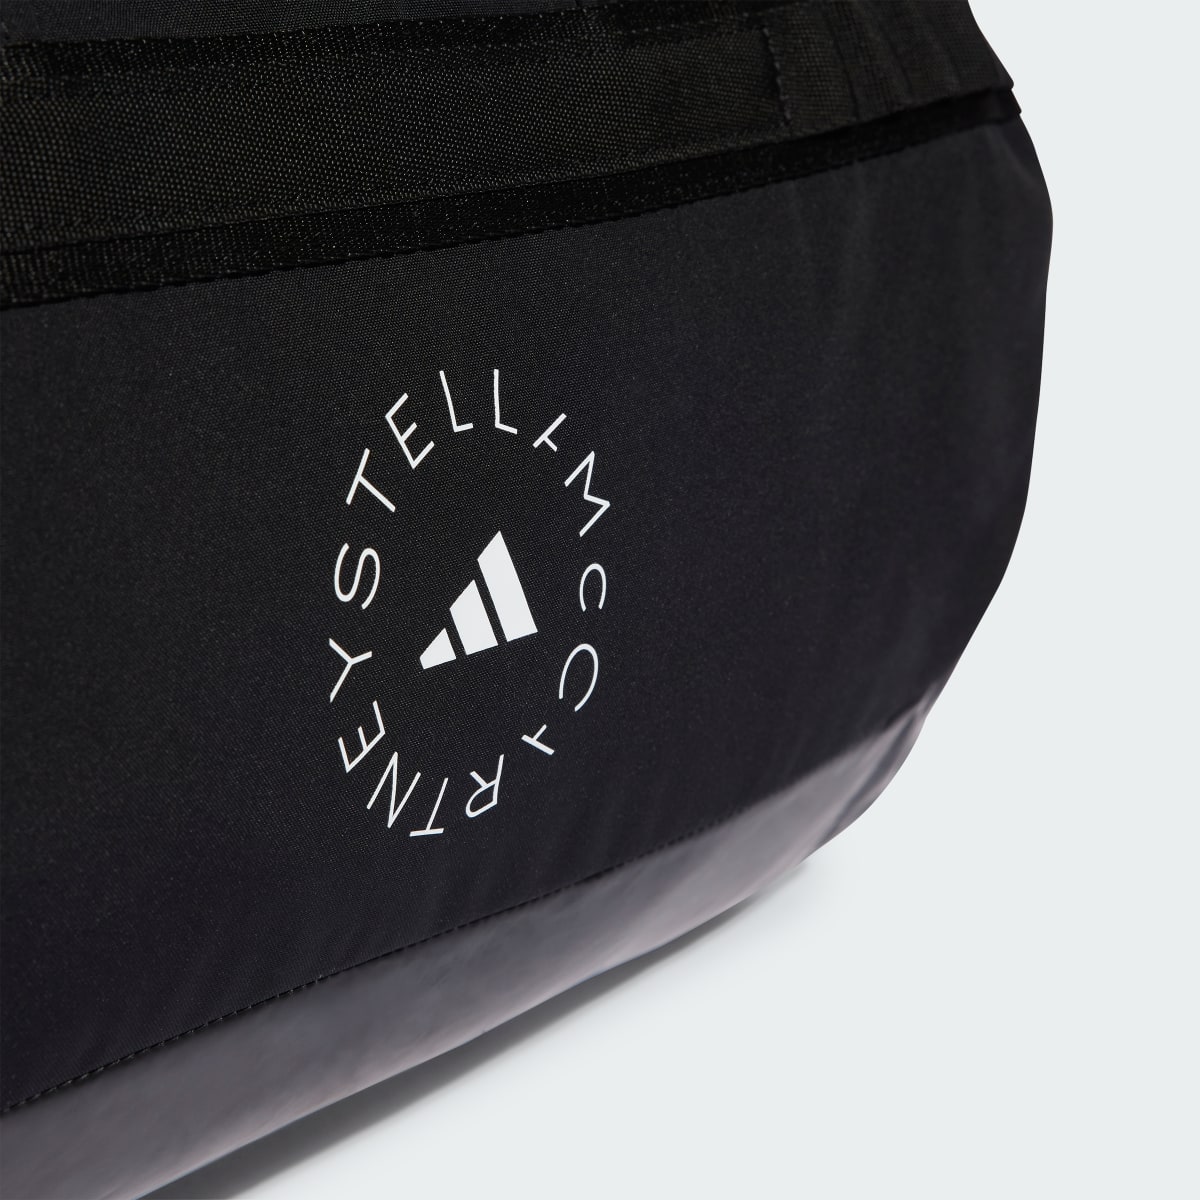 Adidas Bolsa de deporte adidas by Stella McCartney 24/7. 6